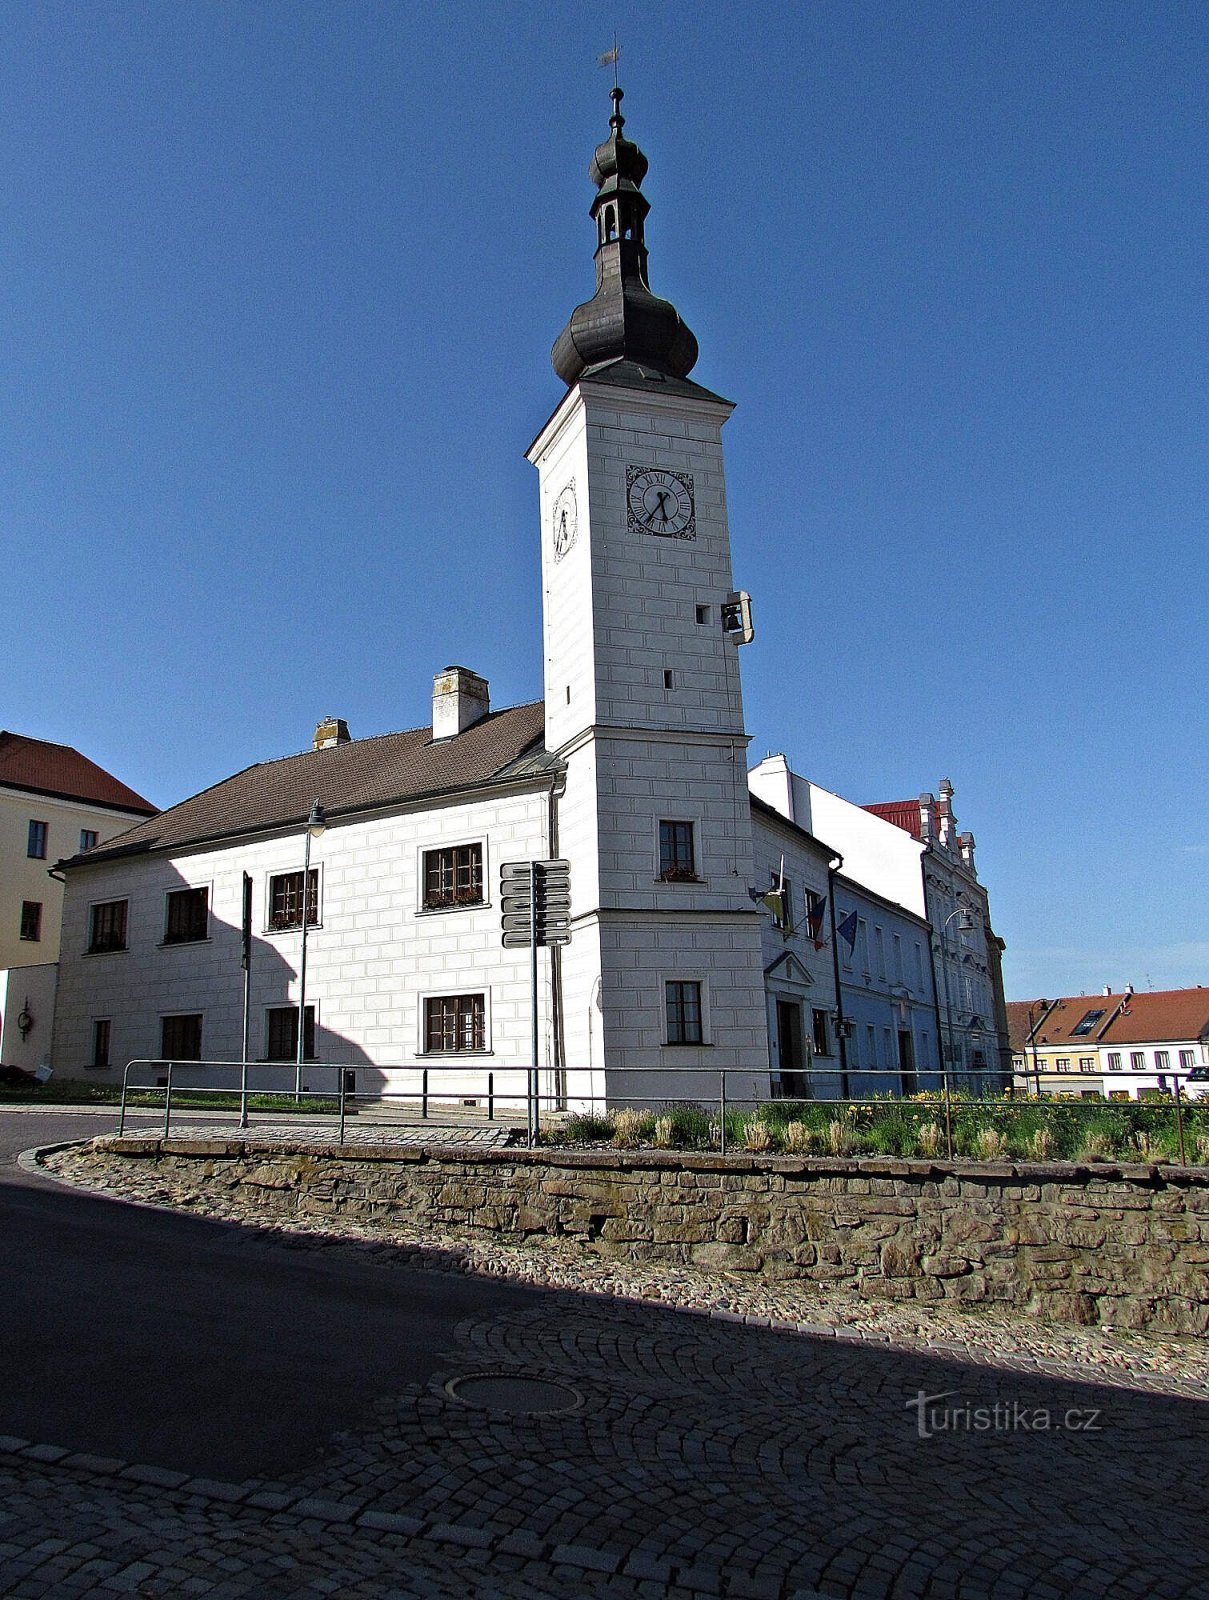 Tòa thị chính cổ Dačice